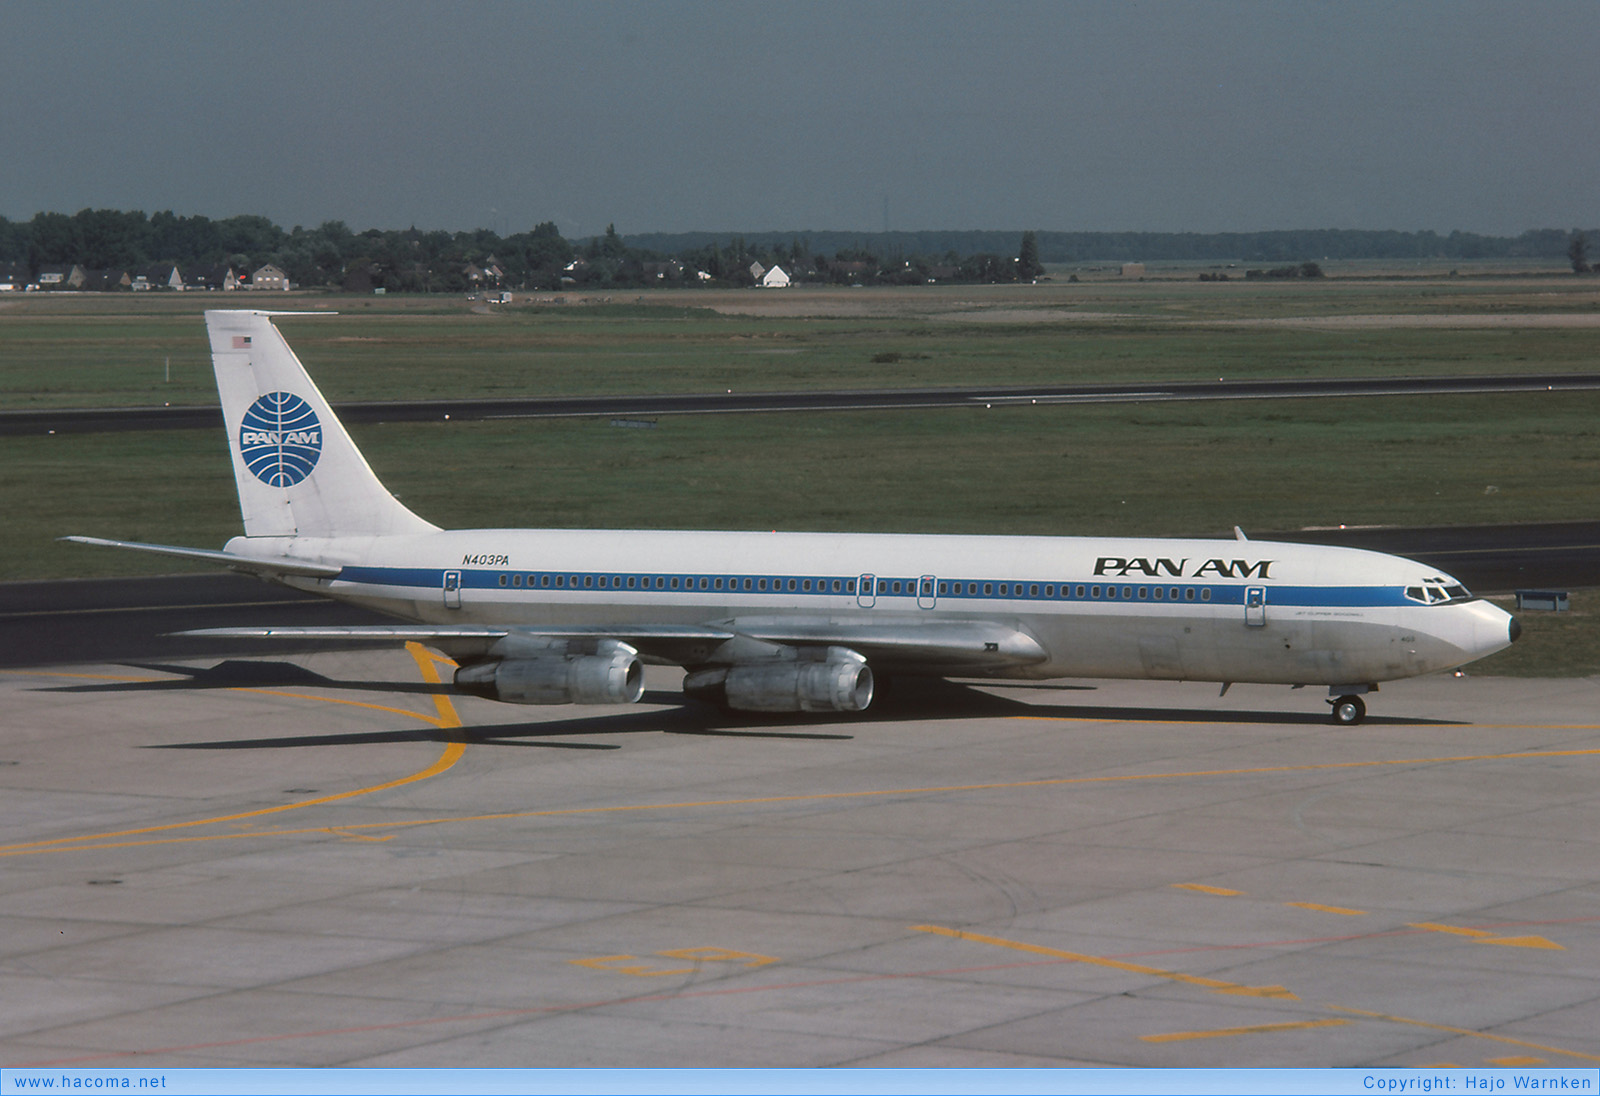 Foto von N403PA - Pan Am Clipper Goodwill - Flughafen Düsseldorf - 09.1976